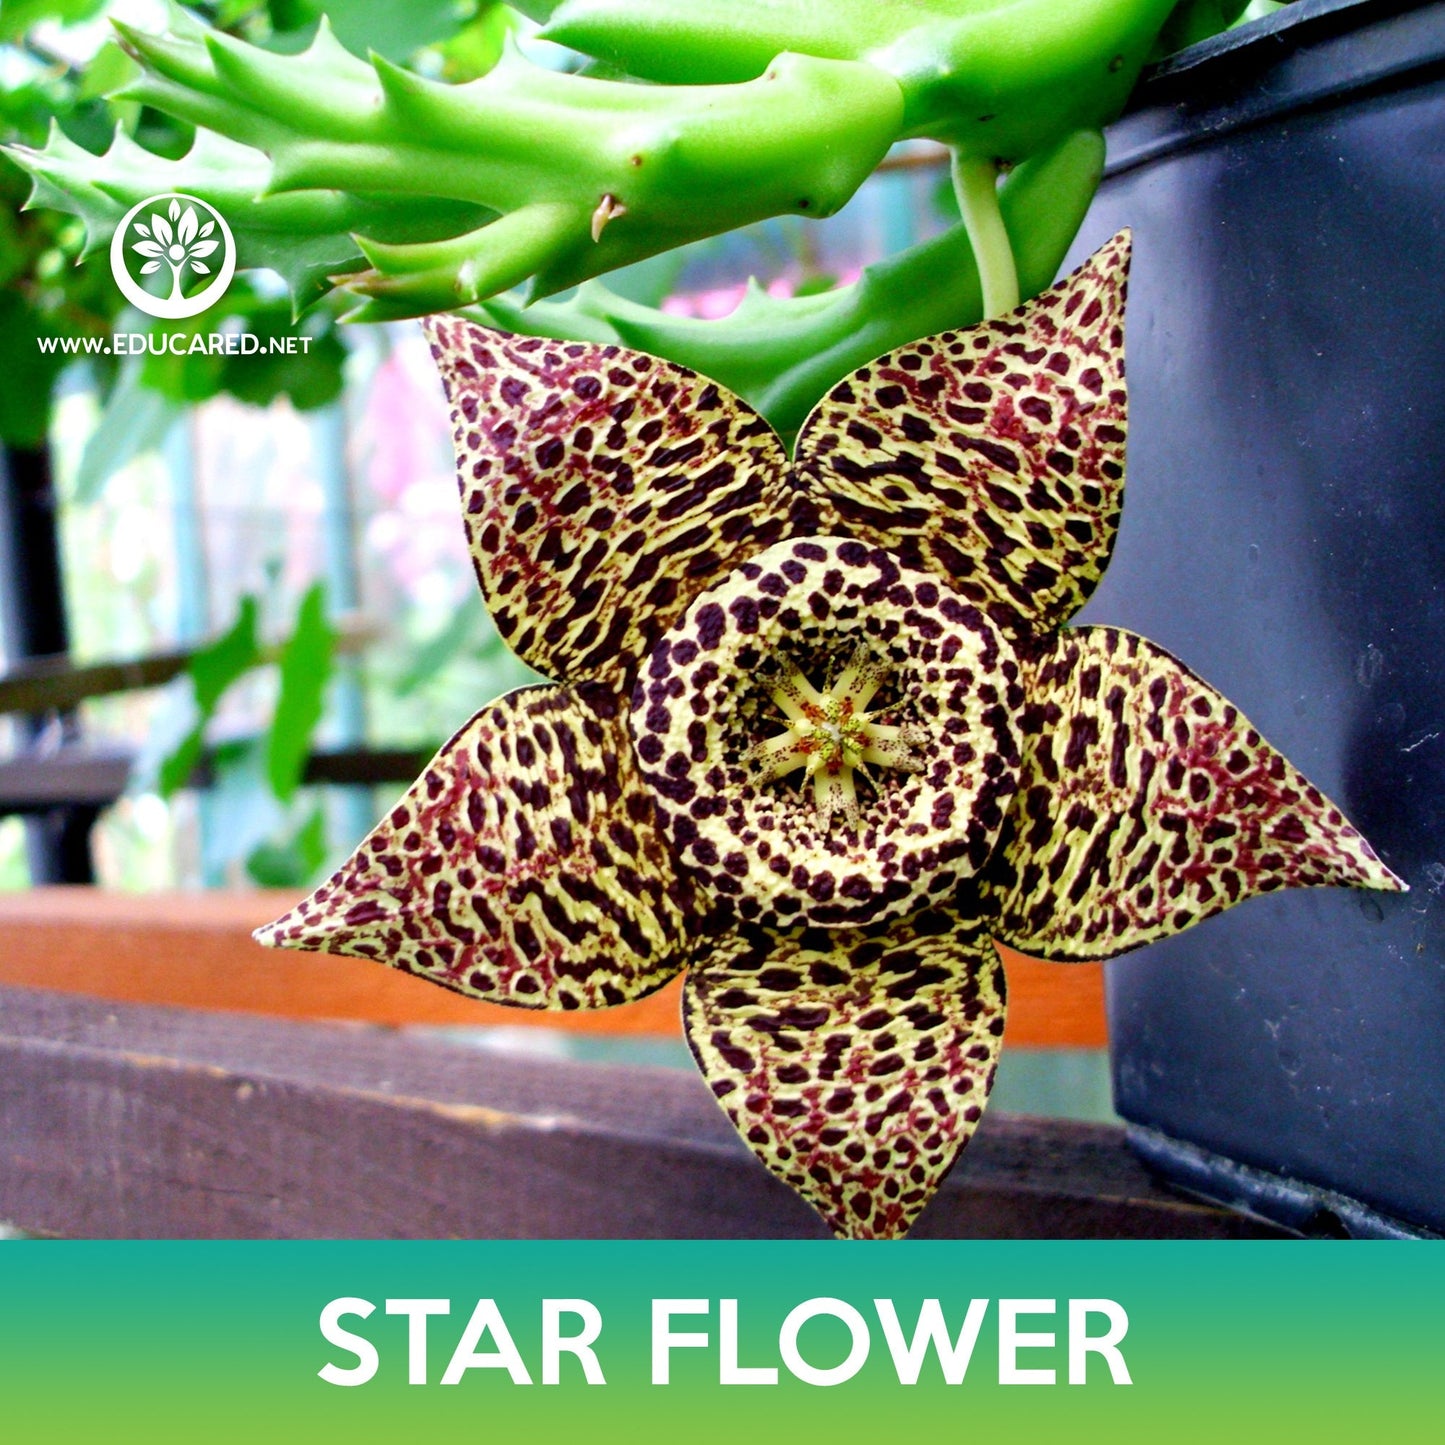 Star Flower Cactus Seeds, Orbea variegata